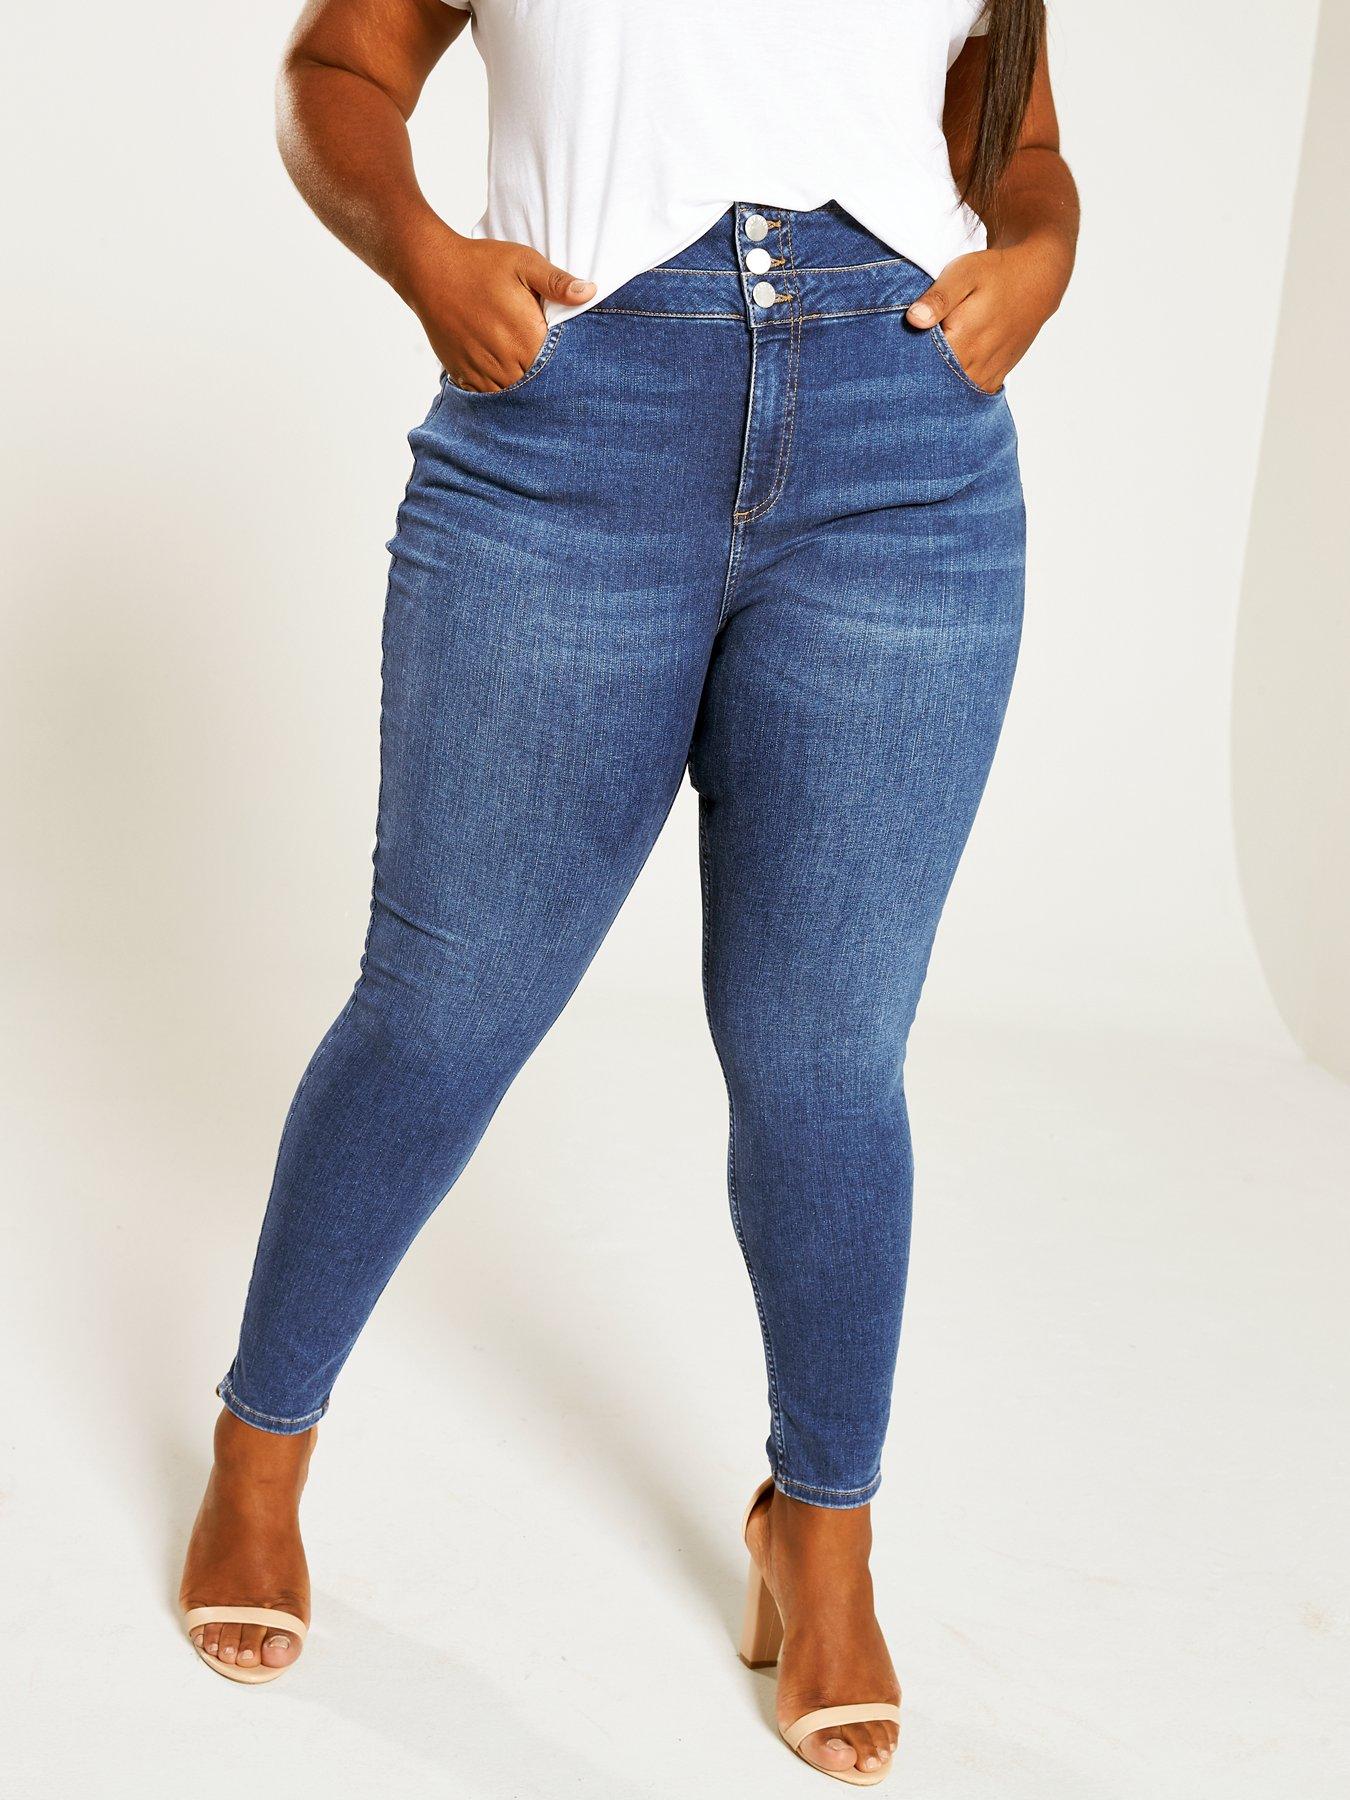 jeans plus size uk